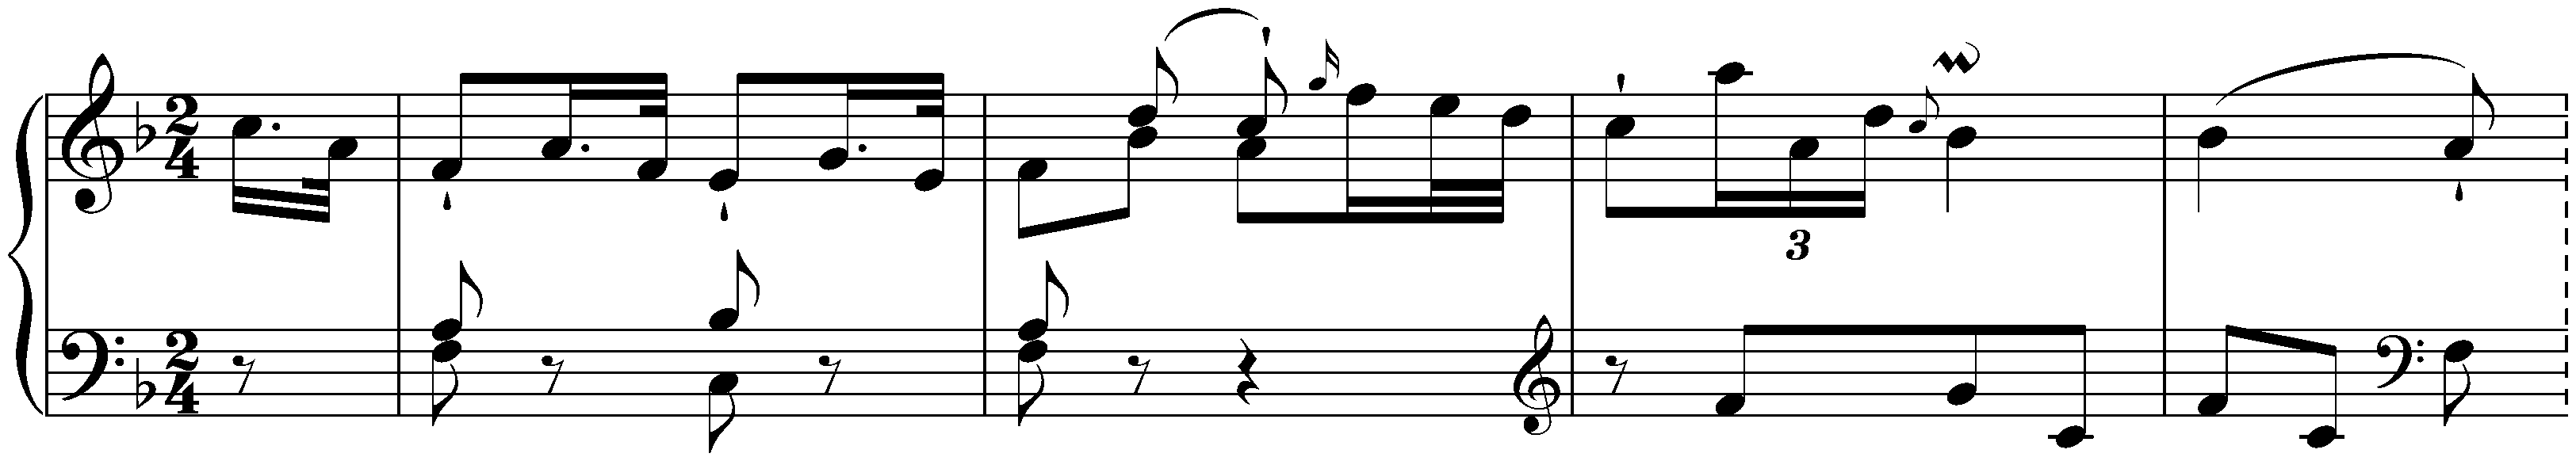 Sonata in F major, Hob. XVI:23; 1.